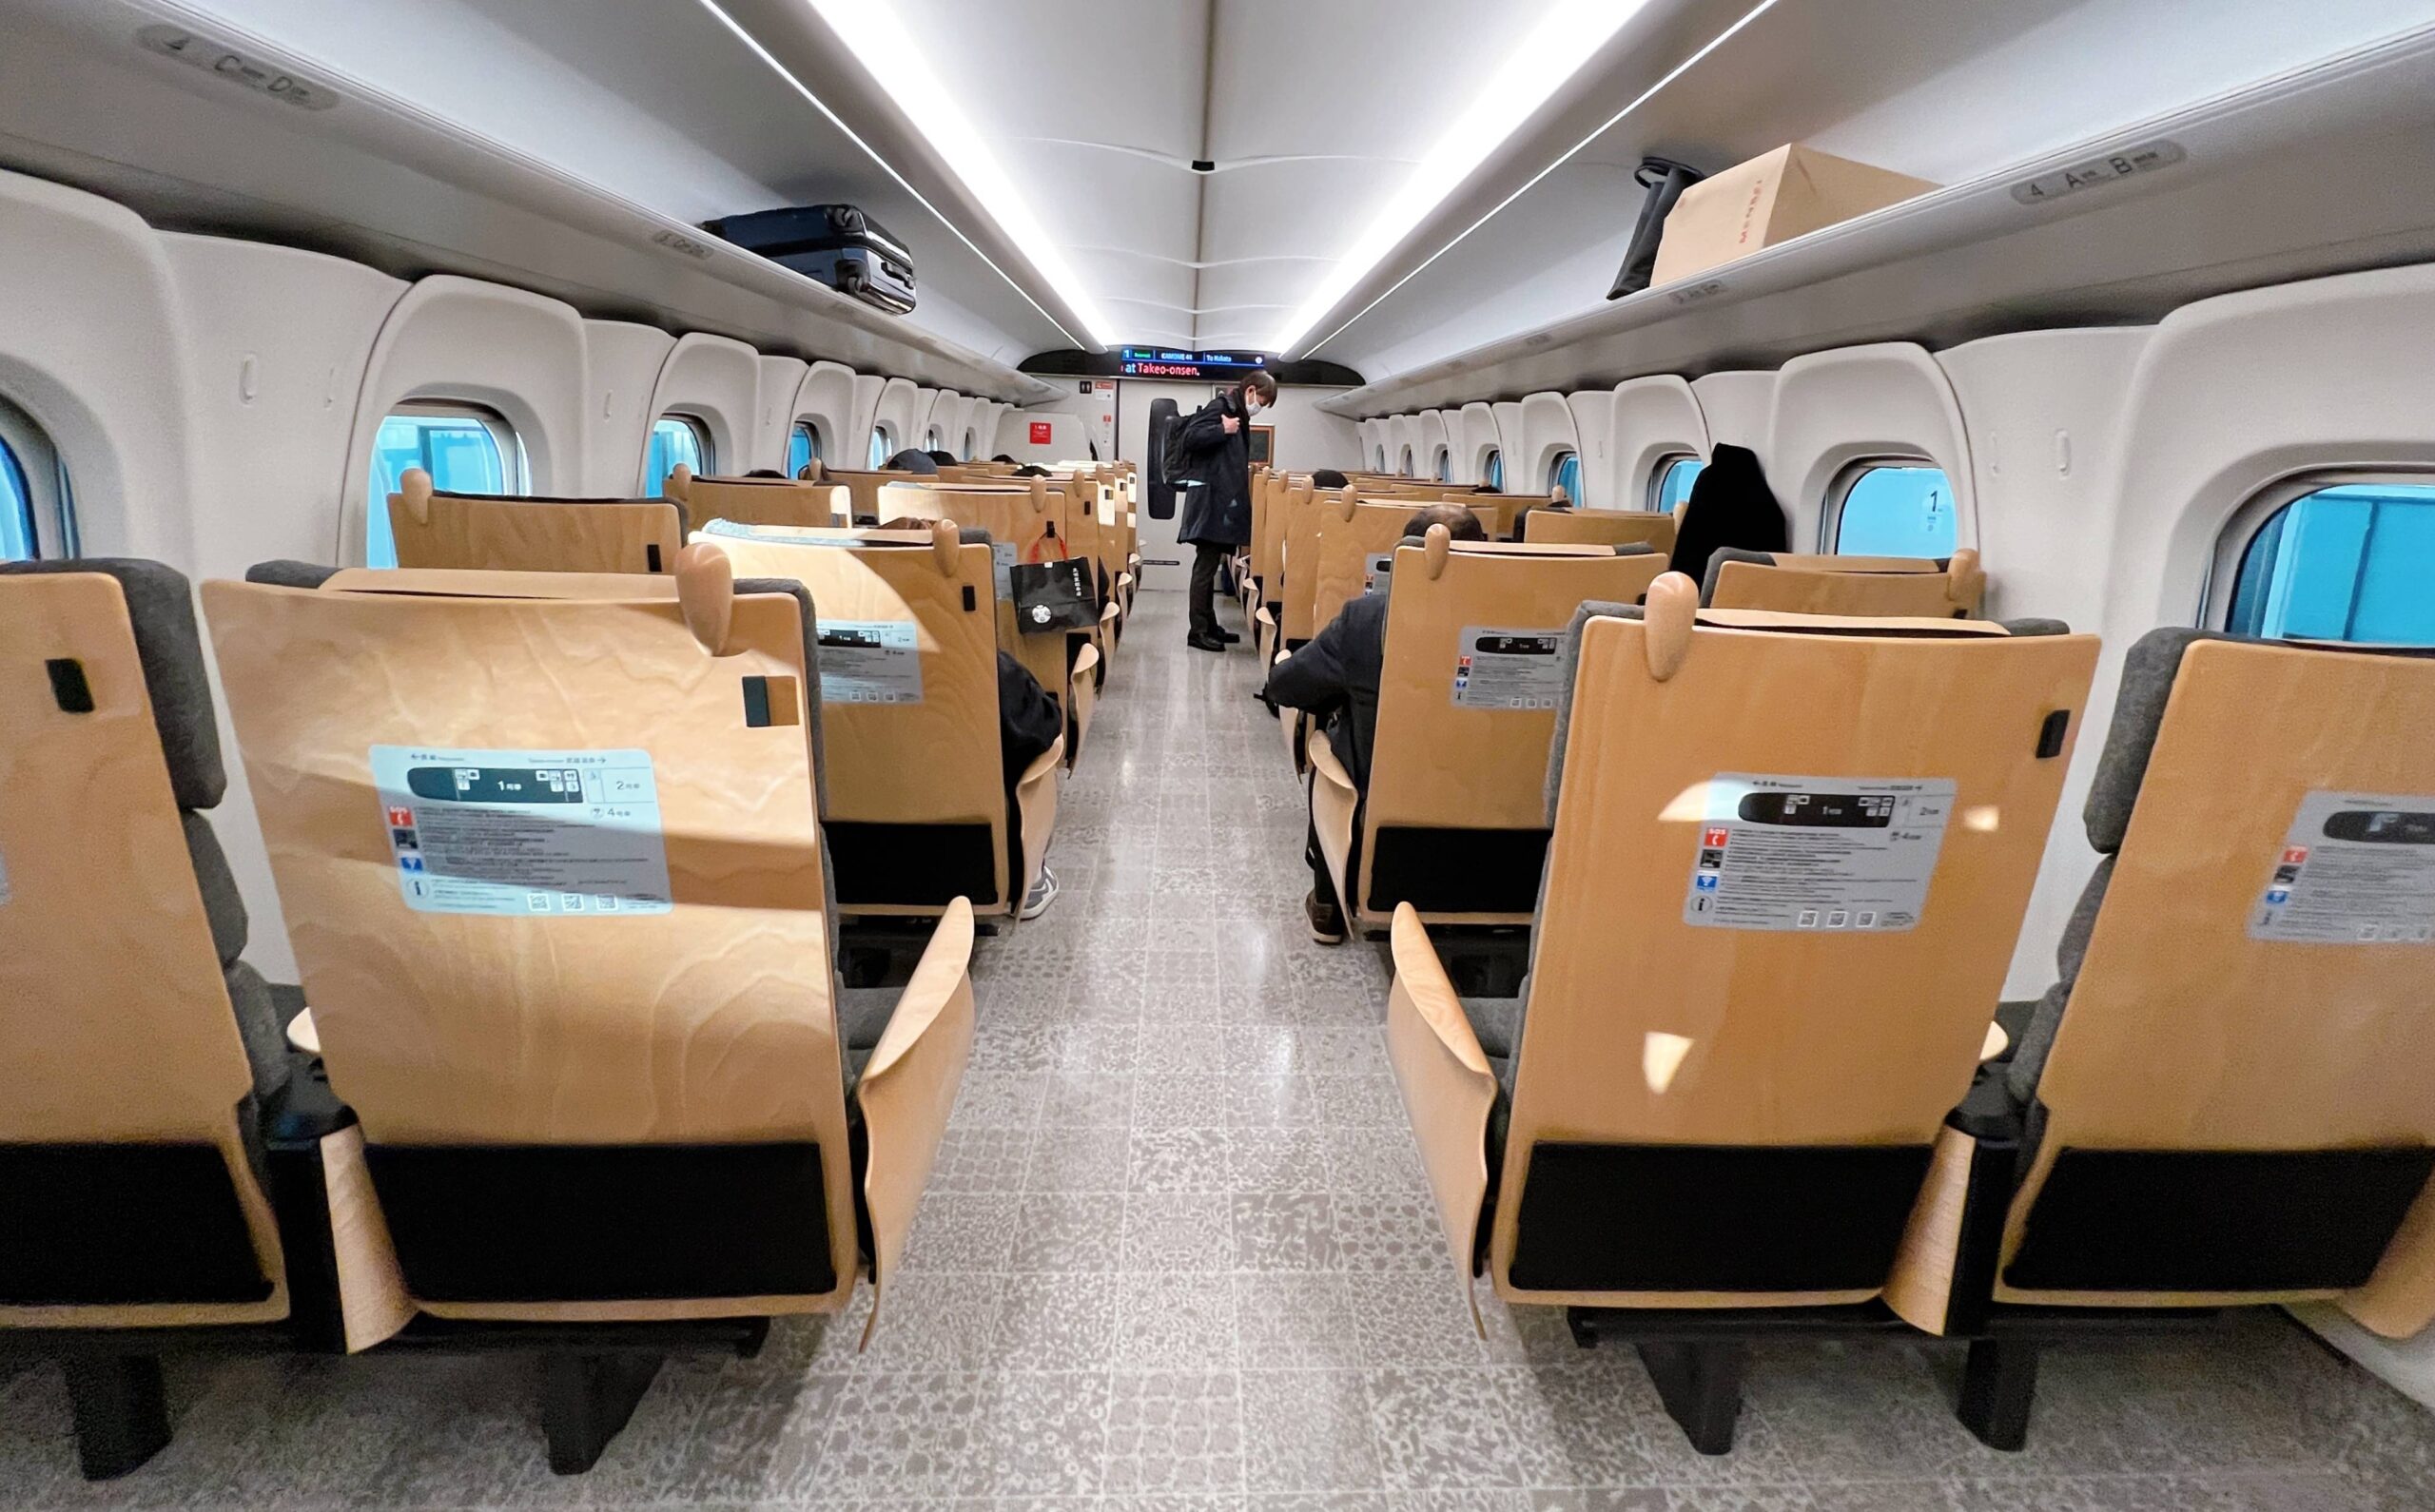 九州鐵道自助旅行一定要知道的JR全九州鐵路周遊券，七日玩遍令旅人眼前為之一亮的九州自由行主題景點推薦 @。CJ夫人。